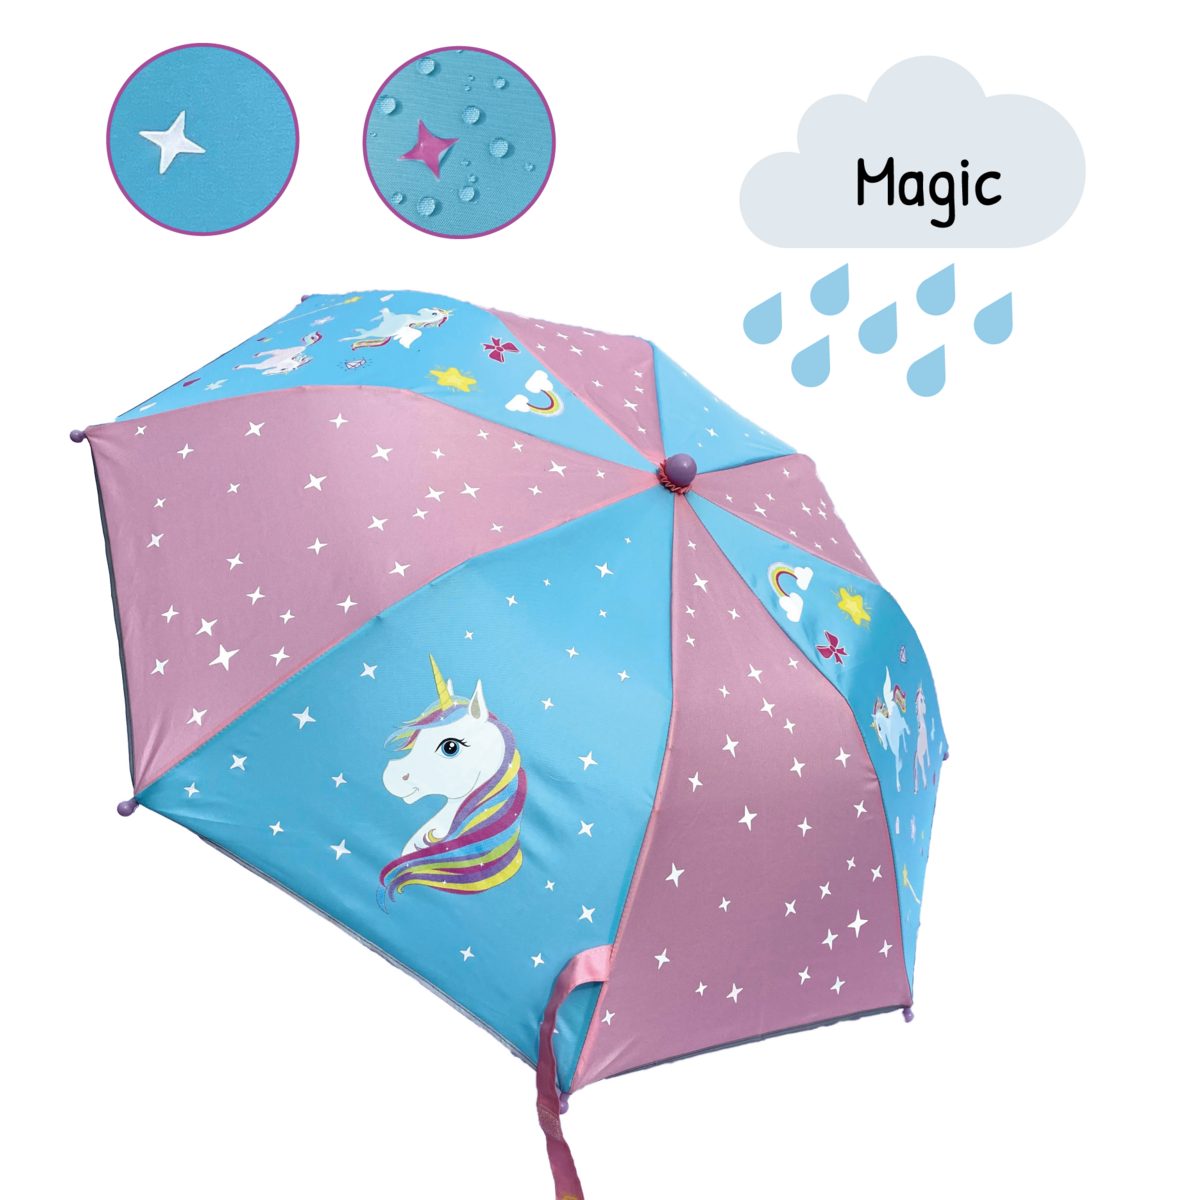 HECKBO Taschenregenschirm Kinder Regenschirm bei Einhorn, Magic - die Regen Farbe wechselt